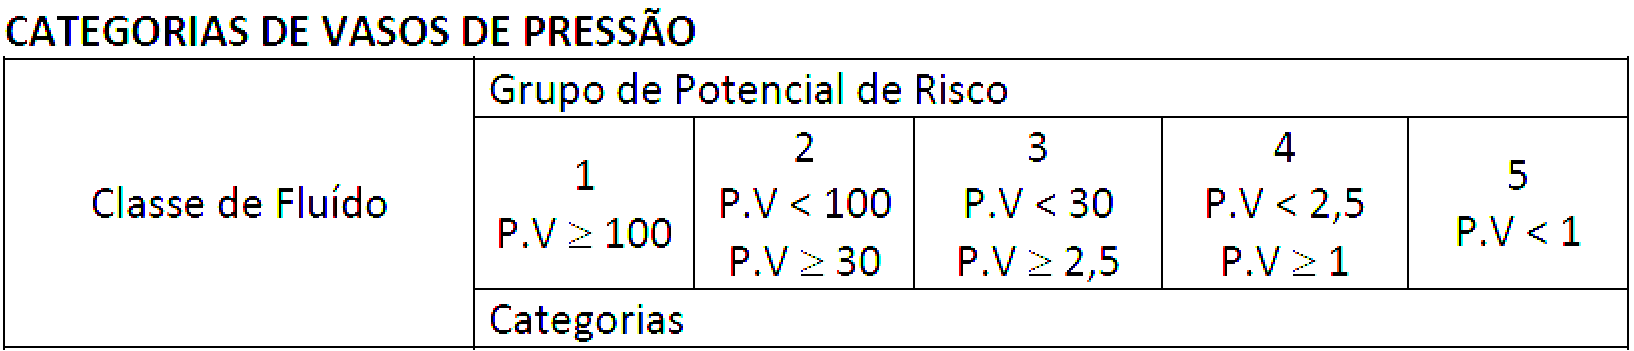 西测解读巴西监管标准NR13认证(图1)